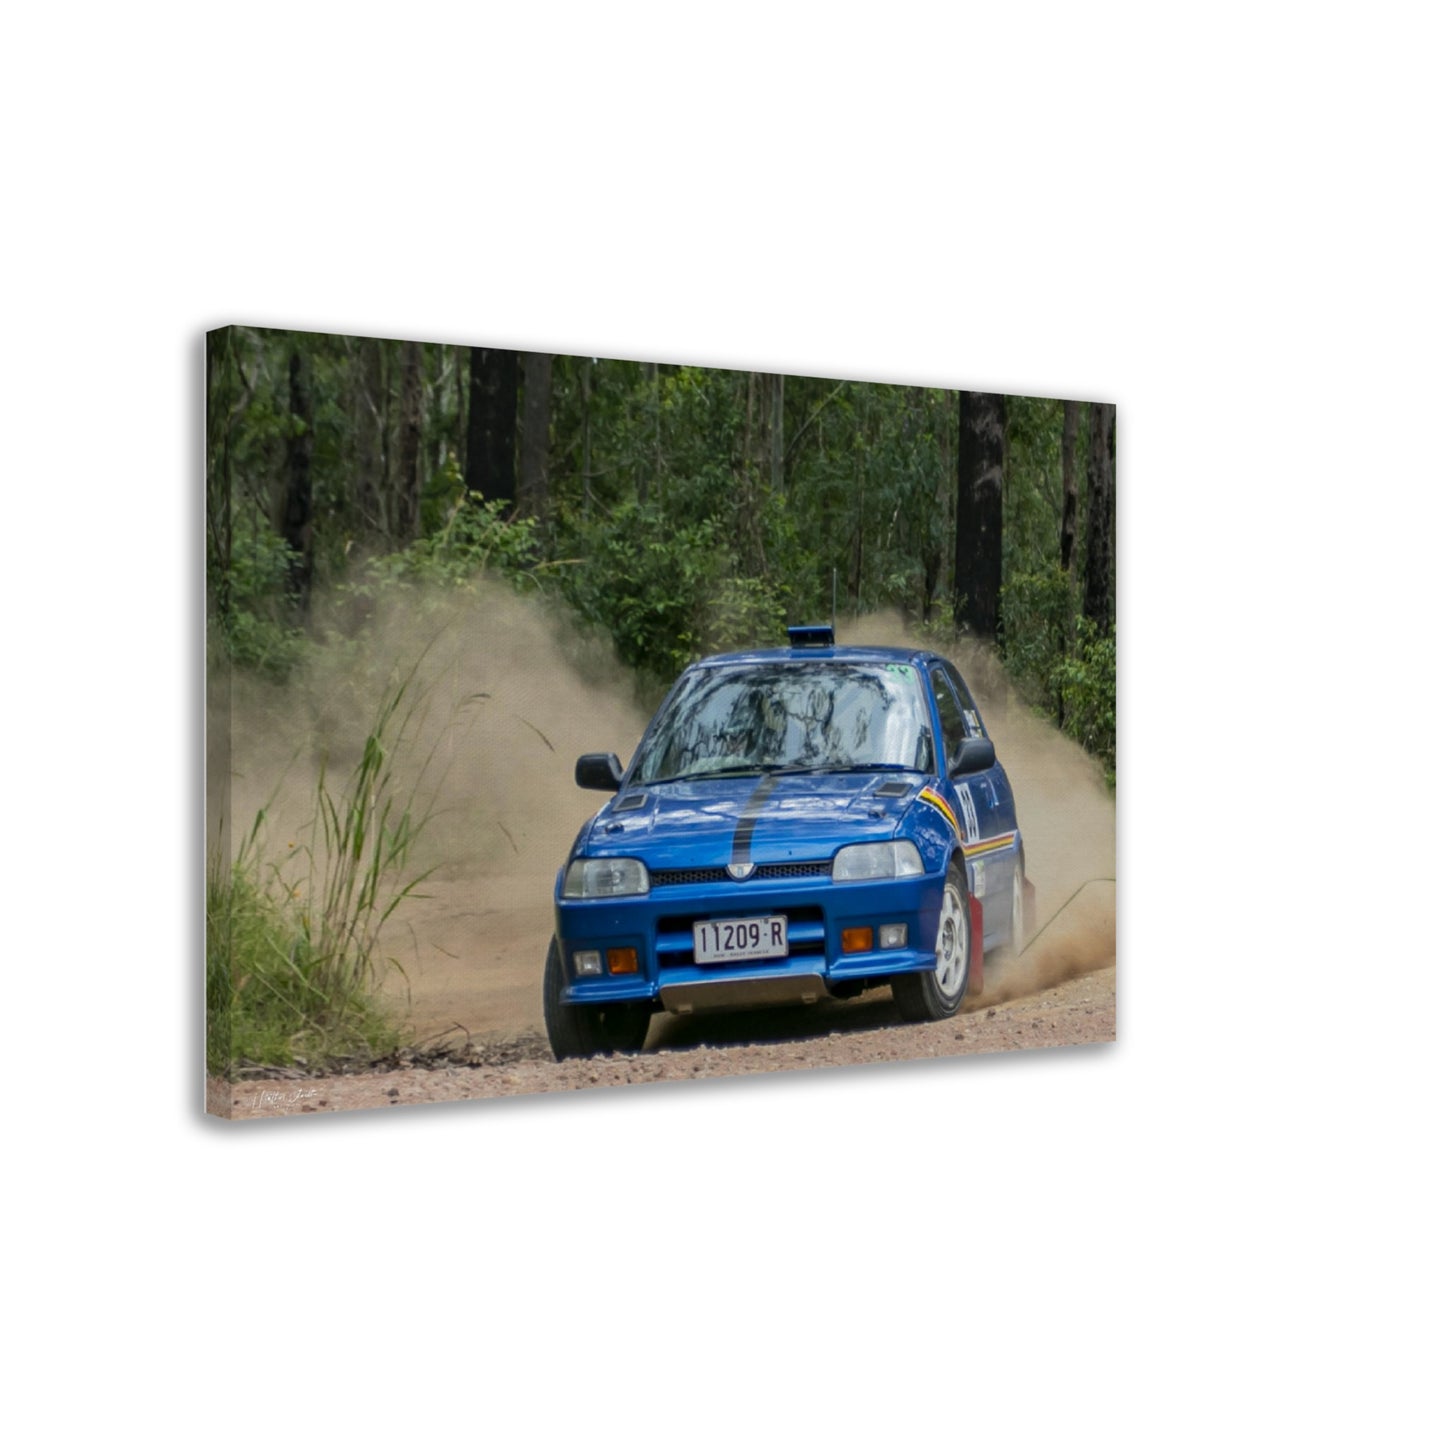 Amsag Taree Rally - Car 33 - Dallas Gill / Taylor Gill